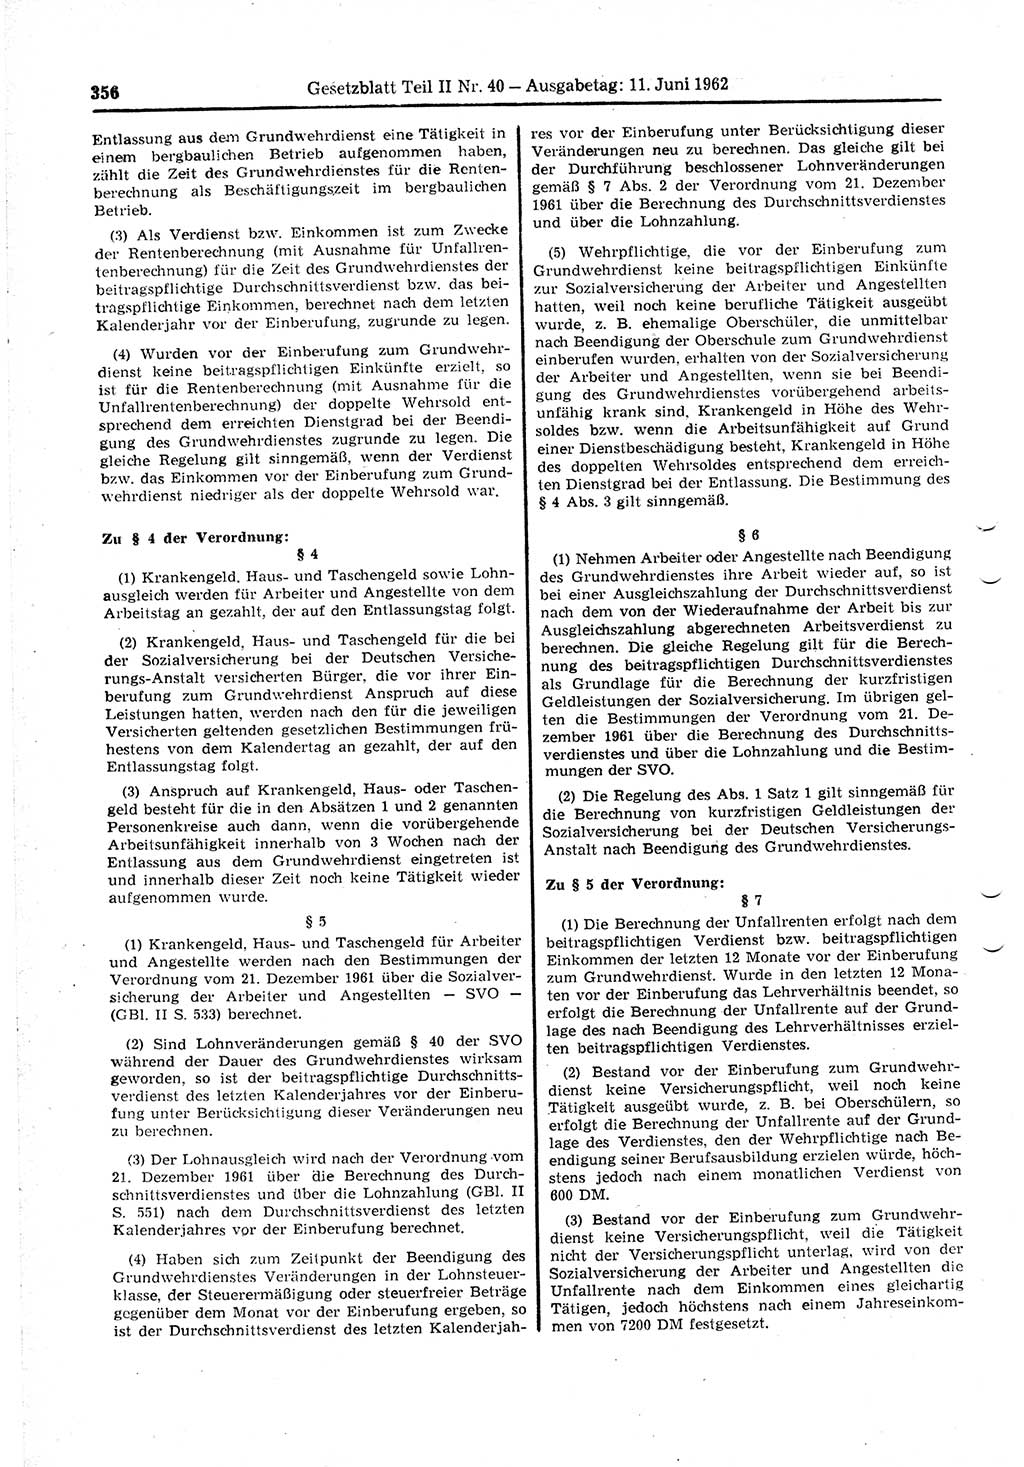 Gesetzblatt (GBl.) der Deutschen Demokratischen Republik (DDR) Teil ⅠⅠ 1962, Seite 356 (GBl. DDR ⅠⅠ 1962, S. 356)